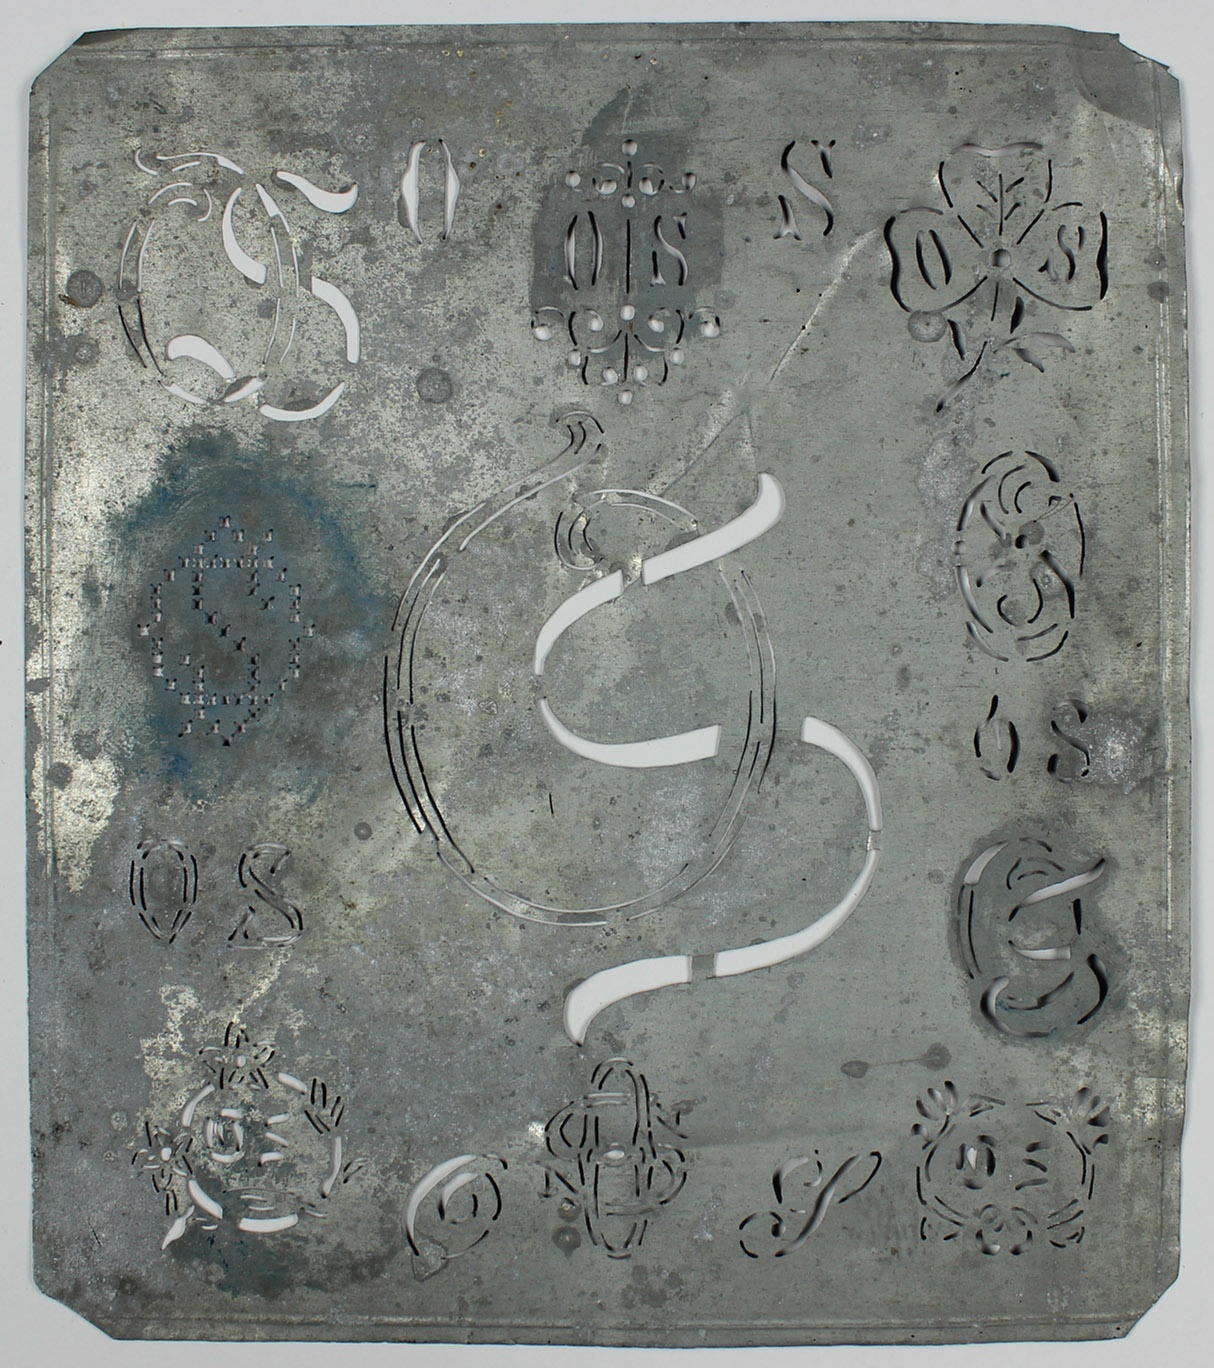 Stickmusterschablone, Blech, verschiedene Blumen- und Buchstabenmotive, in der Mitte "OS" (Museum Wolmirstedt RR-F)